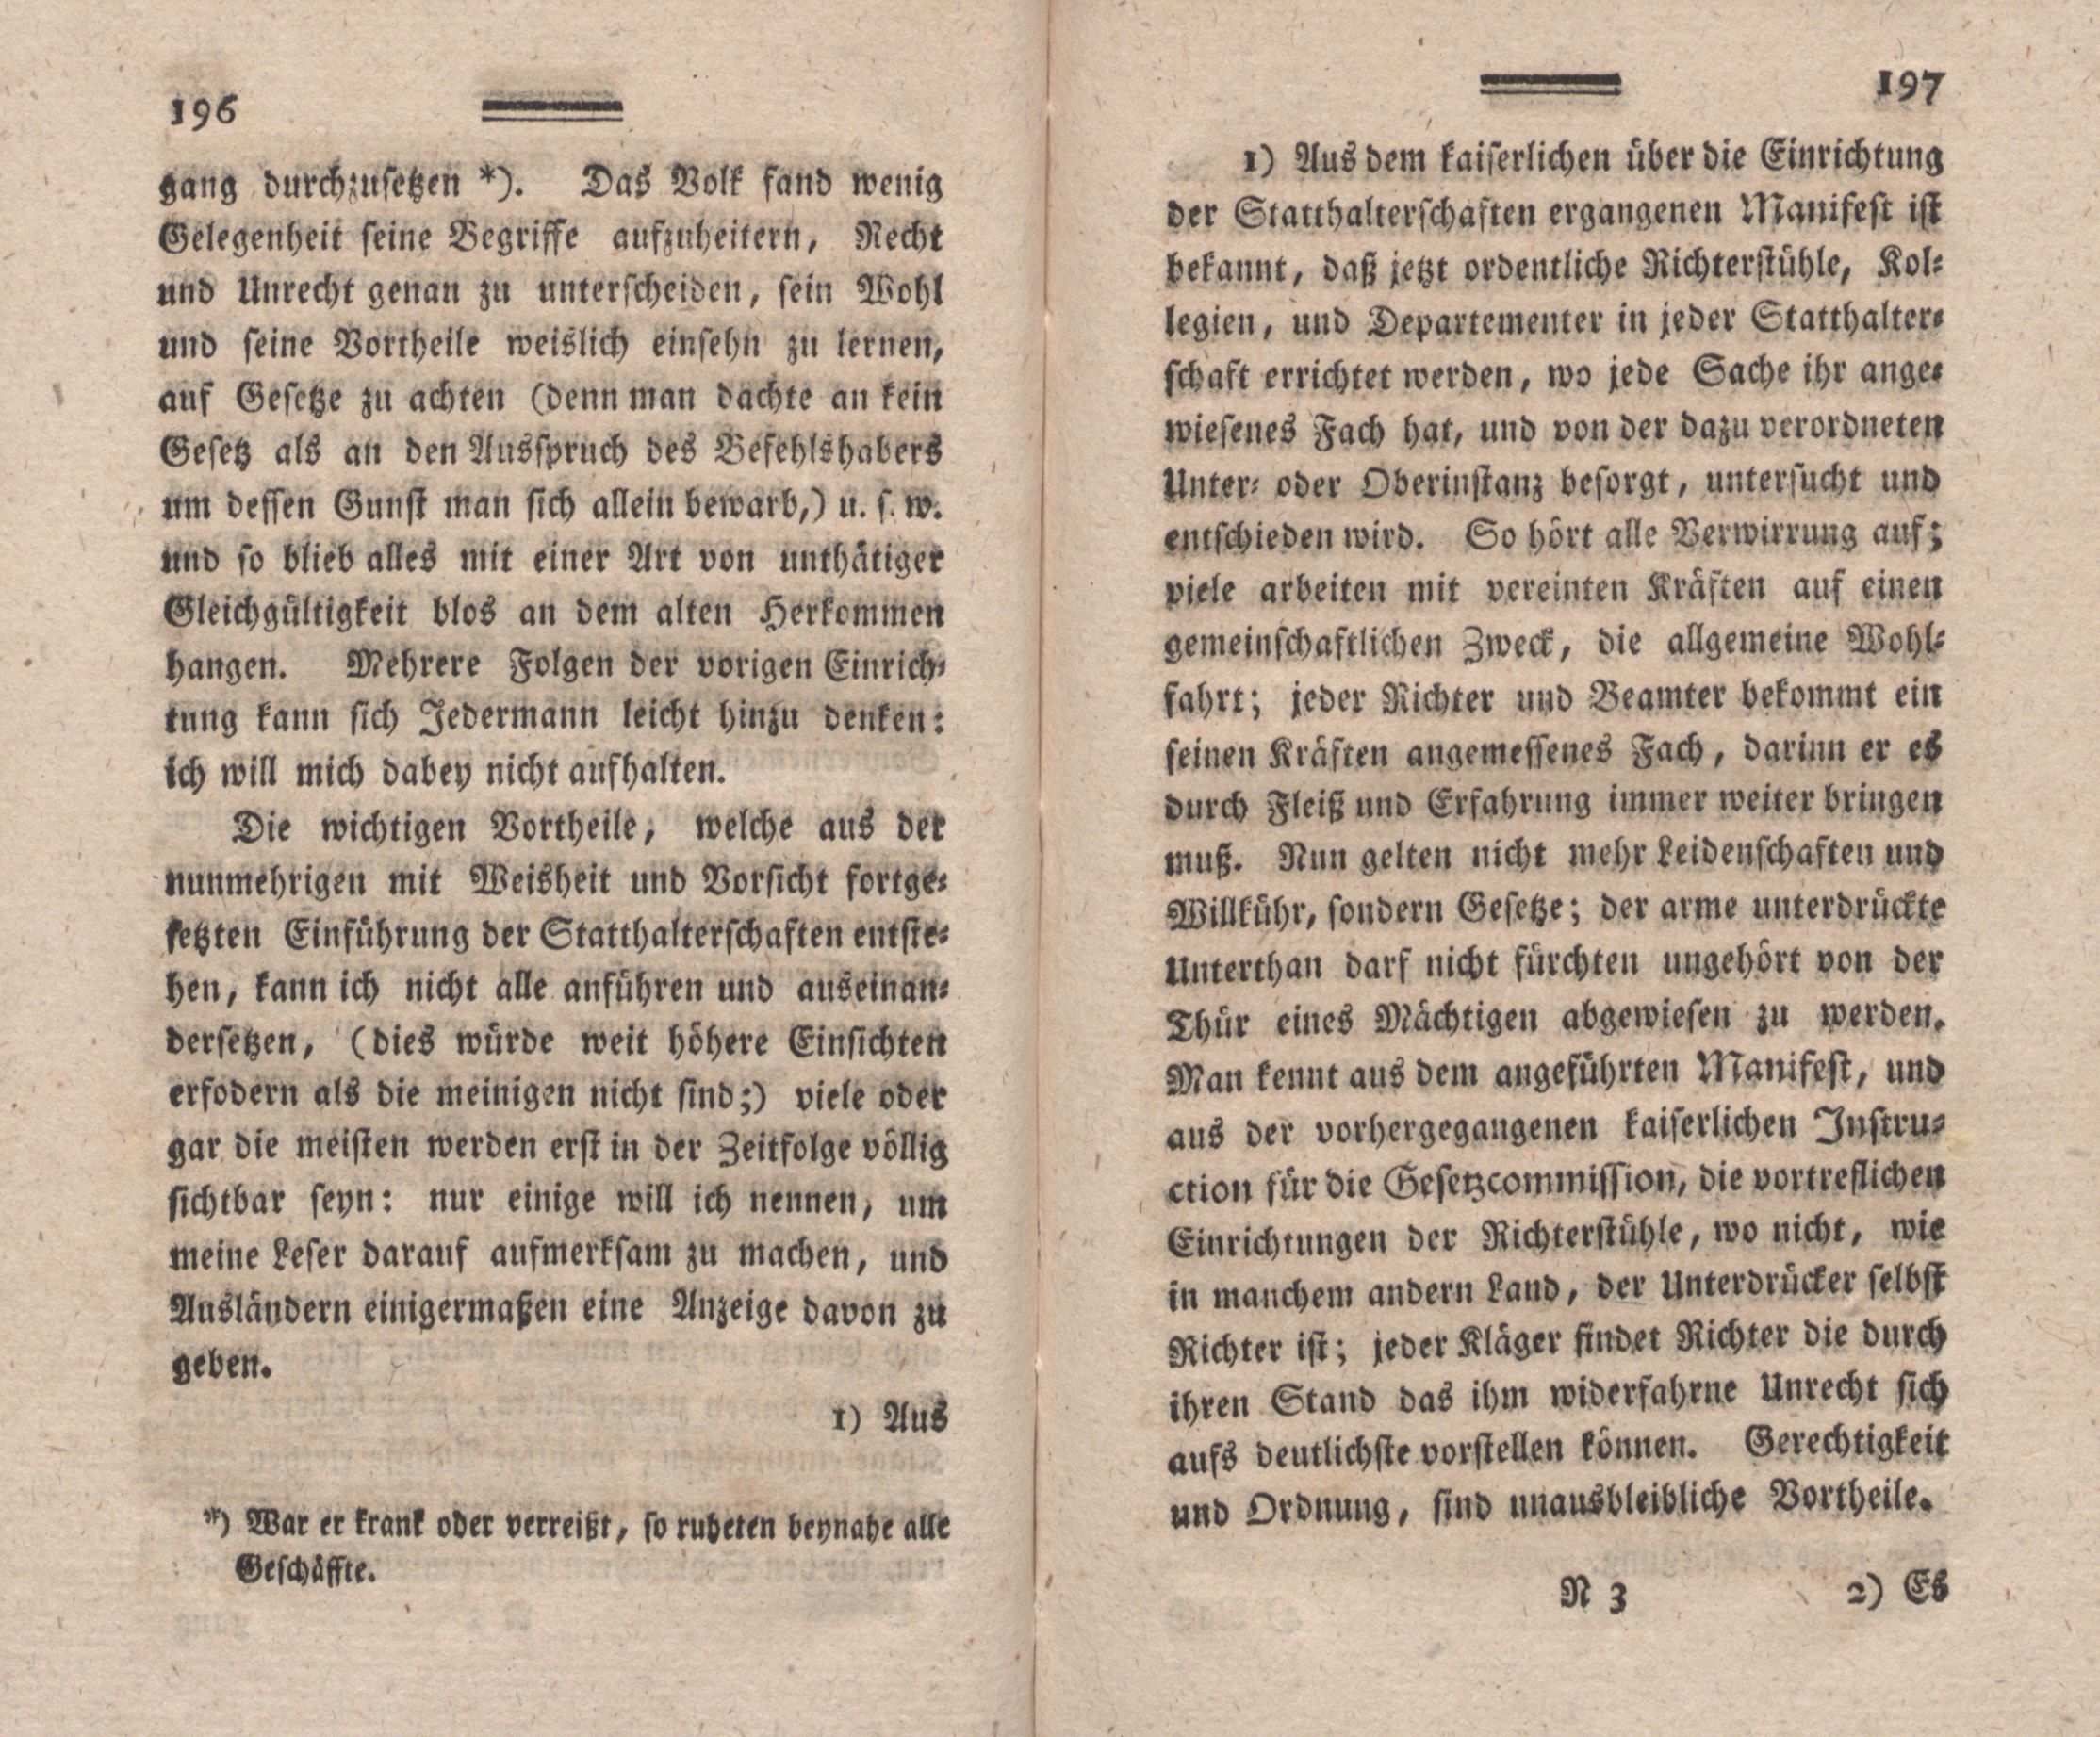 Nordische Miscellaneen [02] (1781) | 99. (196-197) Main body of text